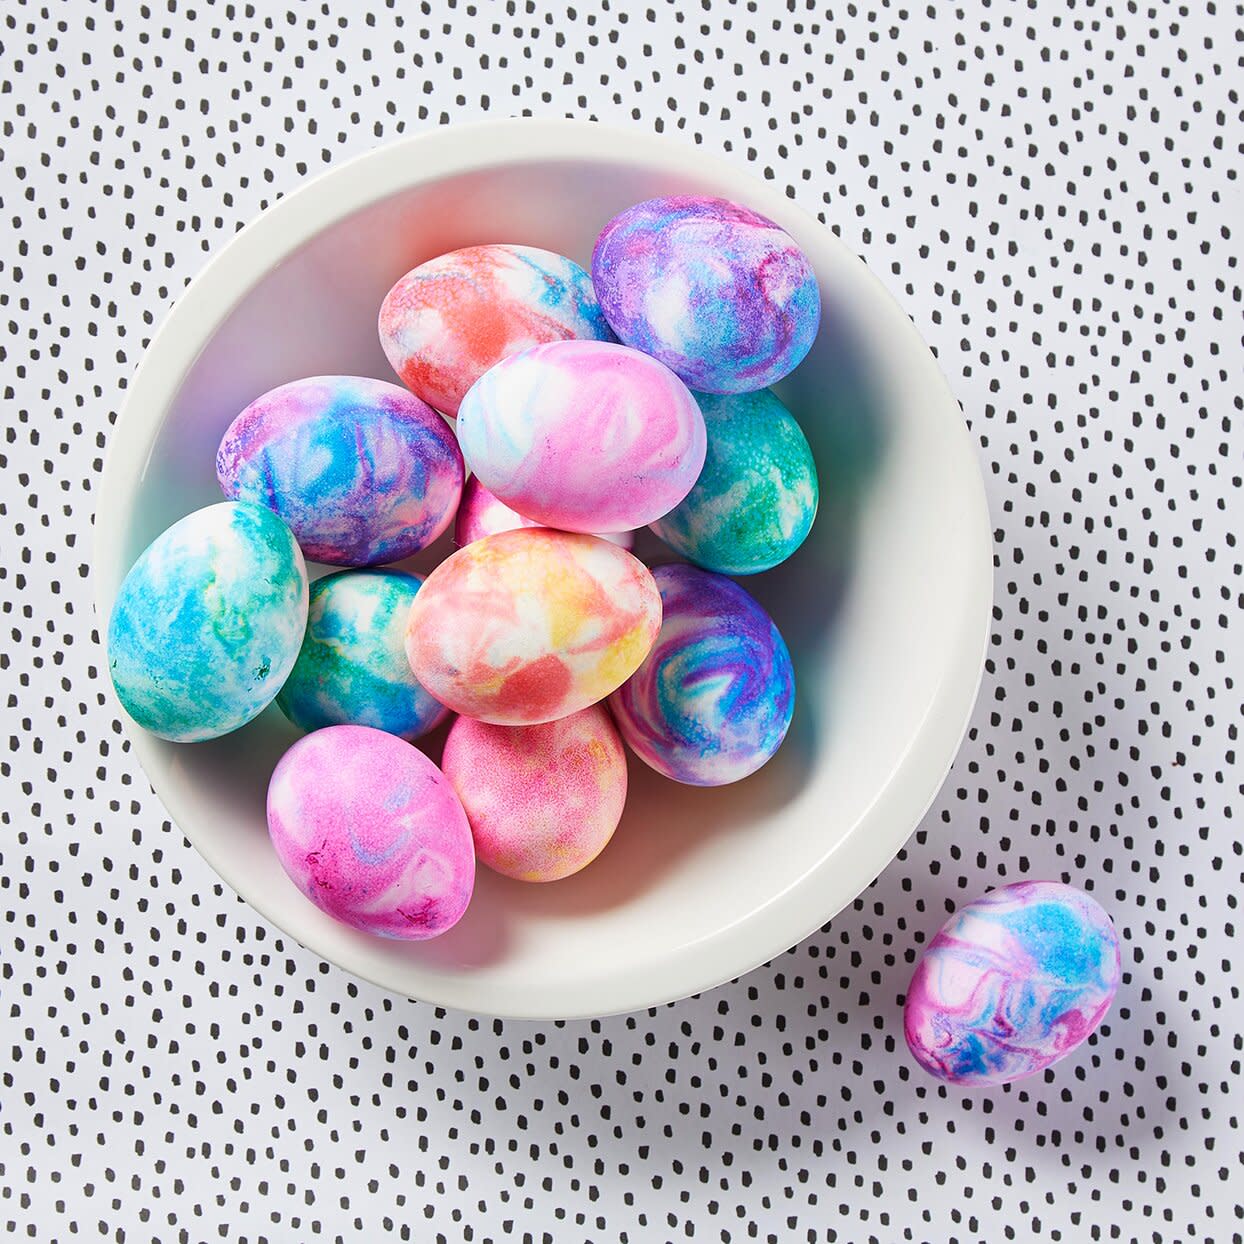 easiest way to dye easter eggs